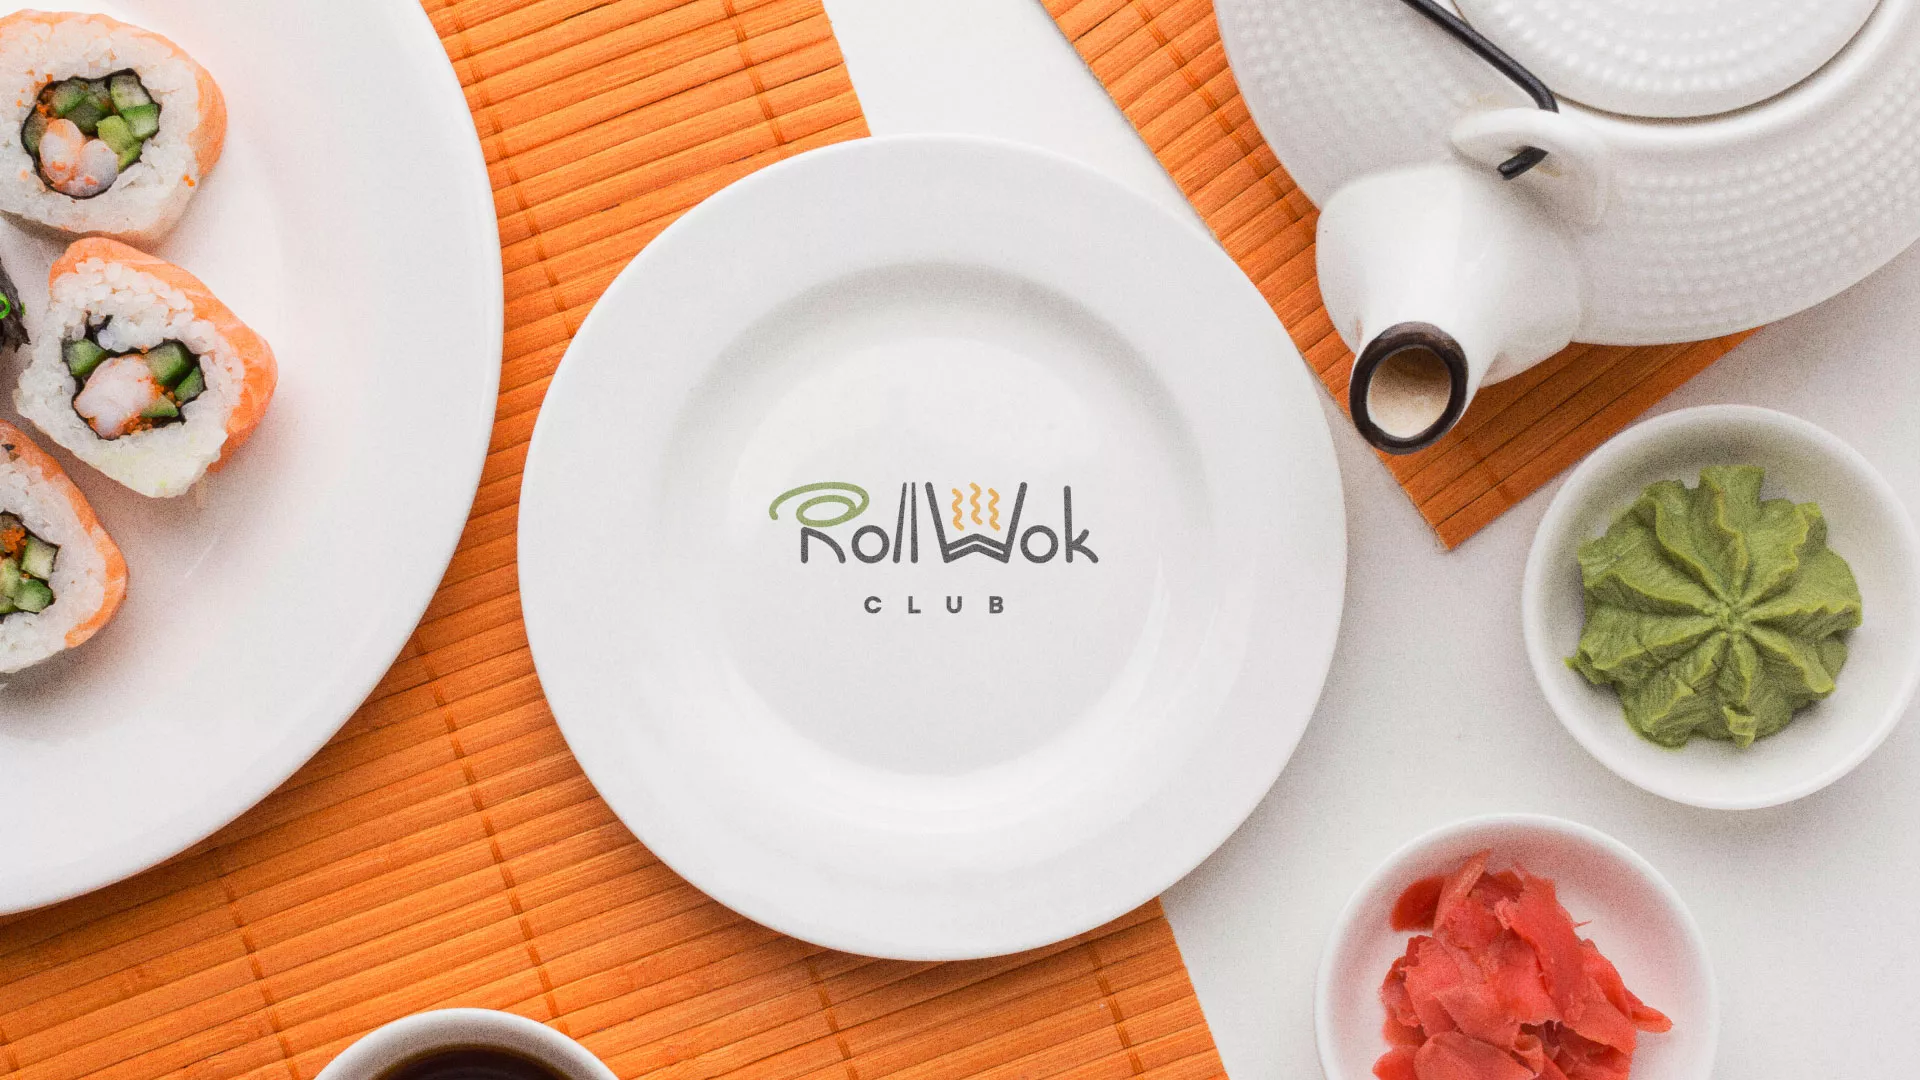 Разработка логотипа и фирменного стиля суши-бара «Roll Wok Club» в Вольске